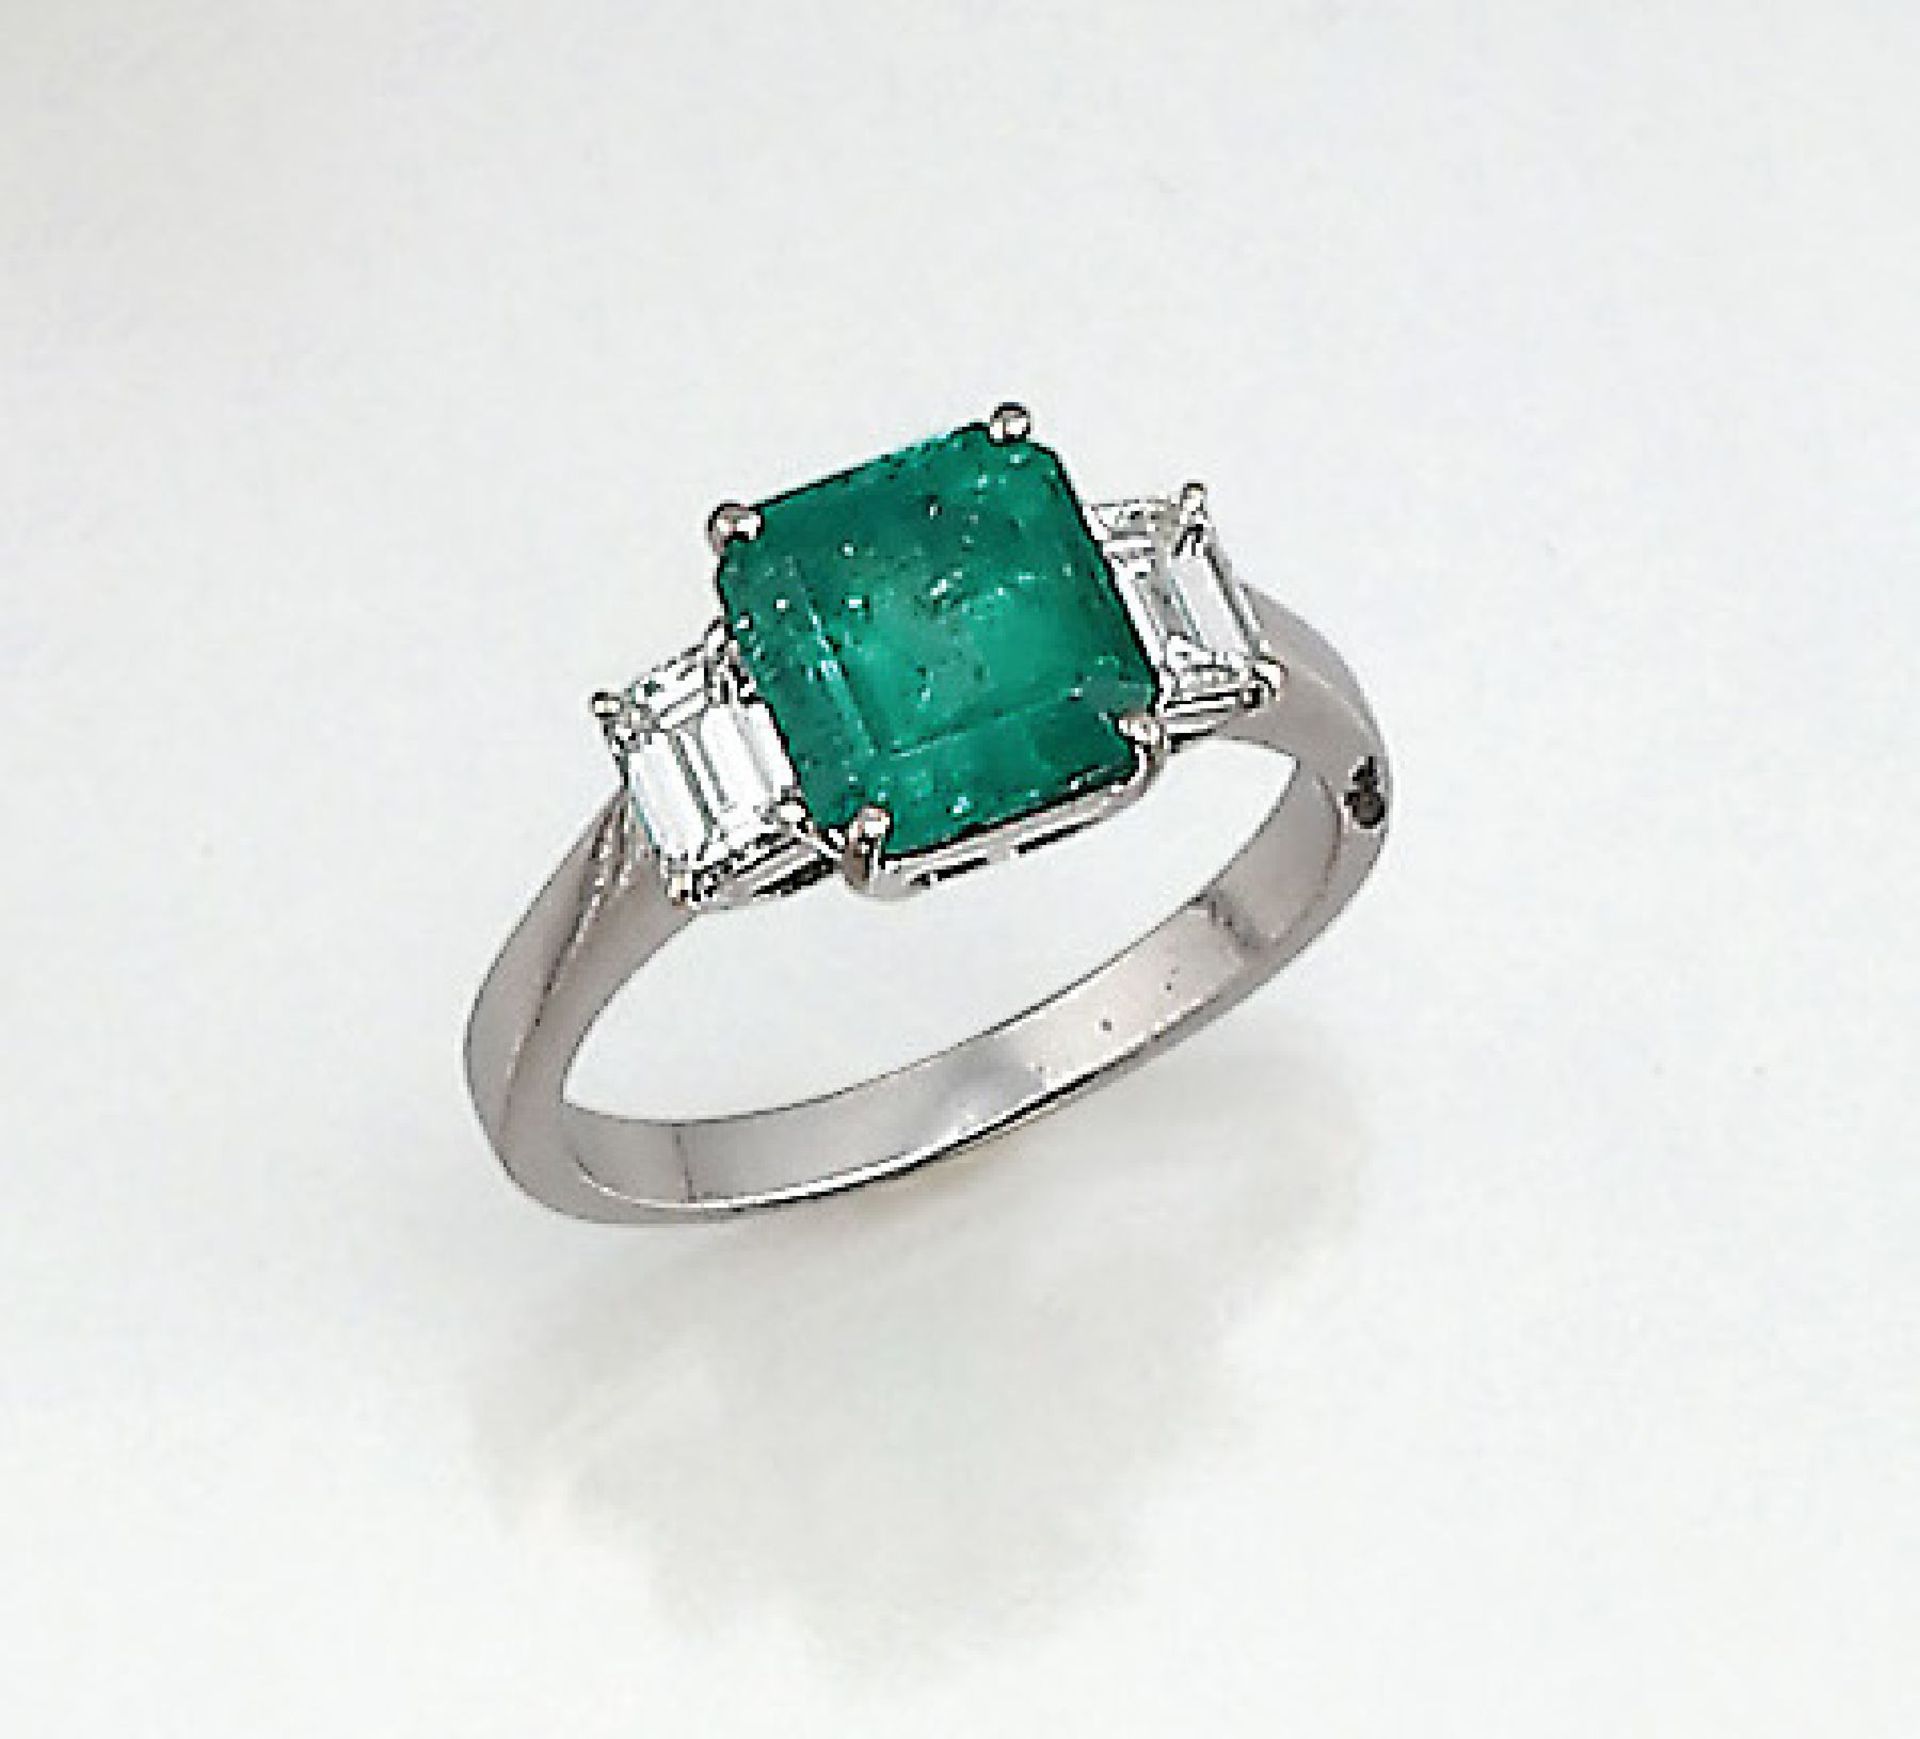 18 kt Gold Ring mit Smaragd und Diamanten, WG 750/000, facett. Smaragd ca. 2.30 ct, seitl. 2